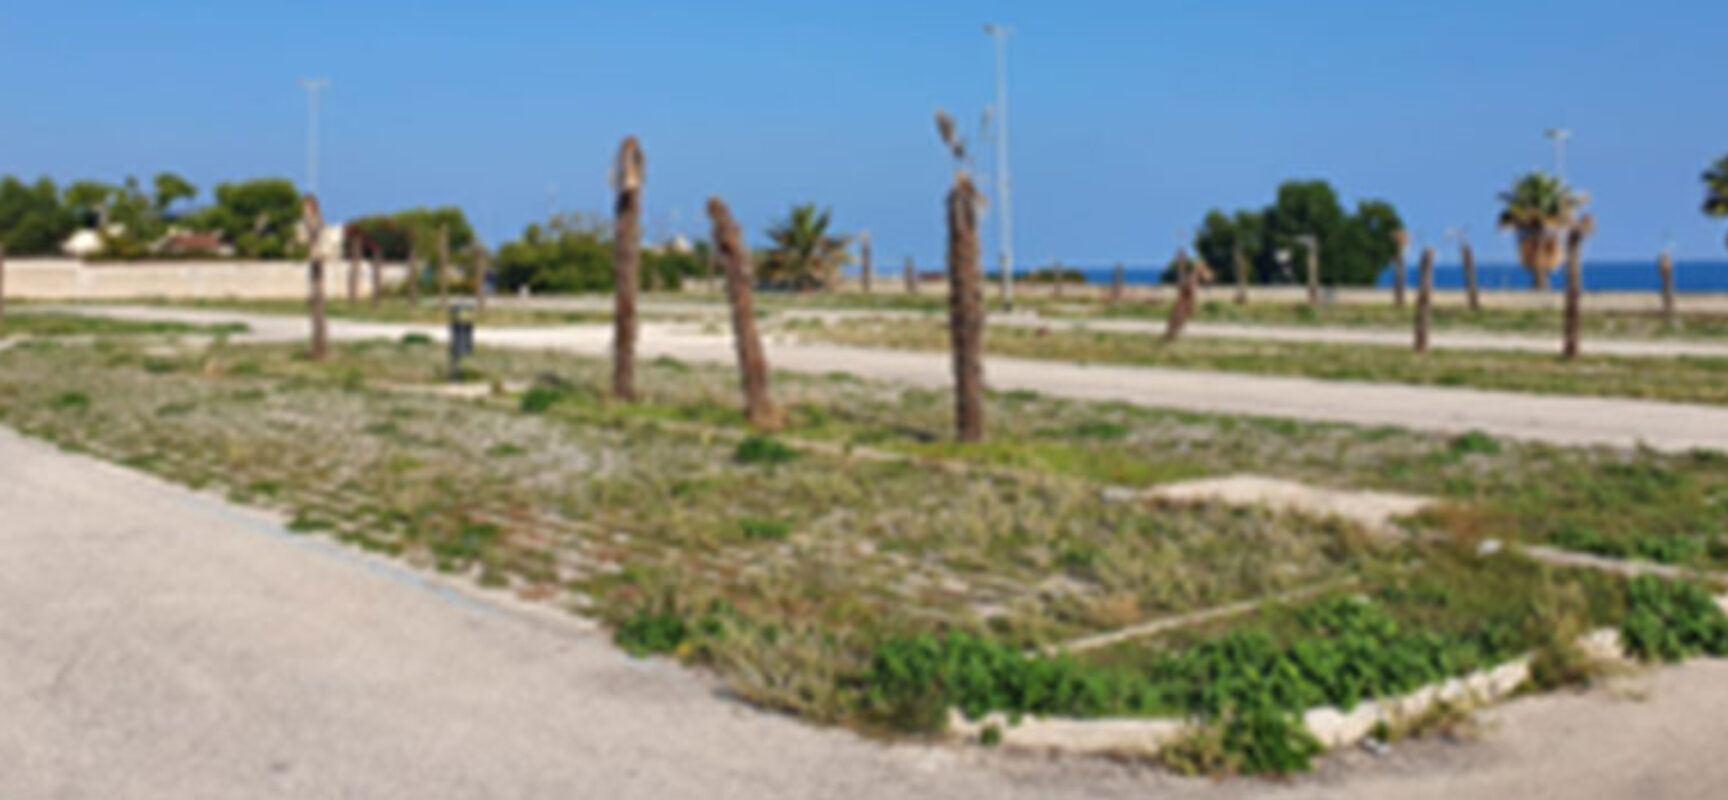 Spina: “La vera rivoluzione verde della Svolta: tagliate circa 200 palme a Conca dei Monaci”